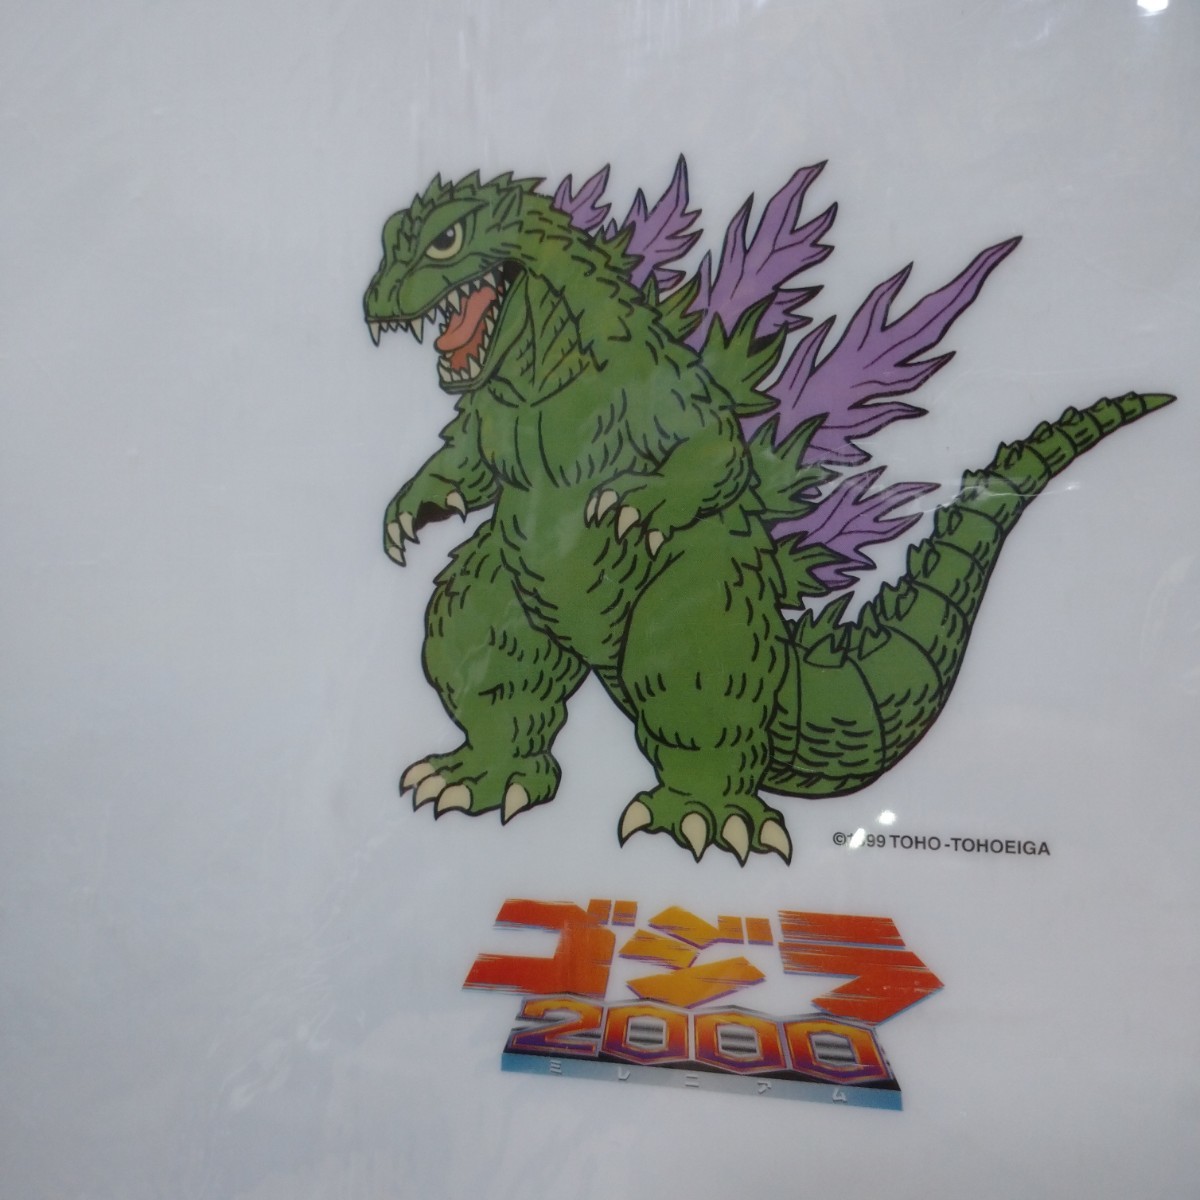 TOYOTA COROLLA Godzilla トヨタ カローラ ゴジラ 下敷き 非売品 ノベルティ コレクション コラボ desk pad limited car collection ②_画像4